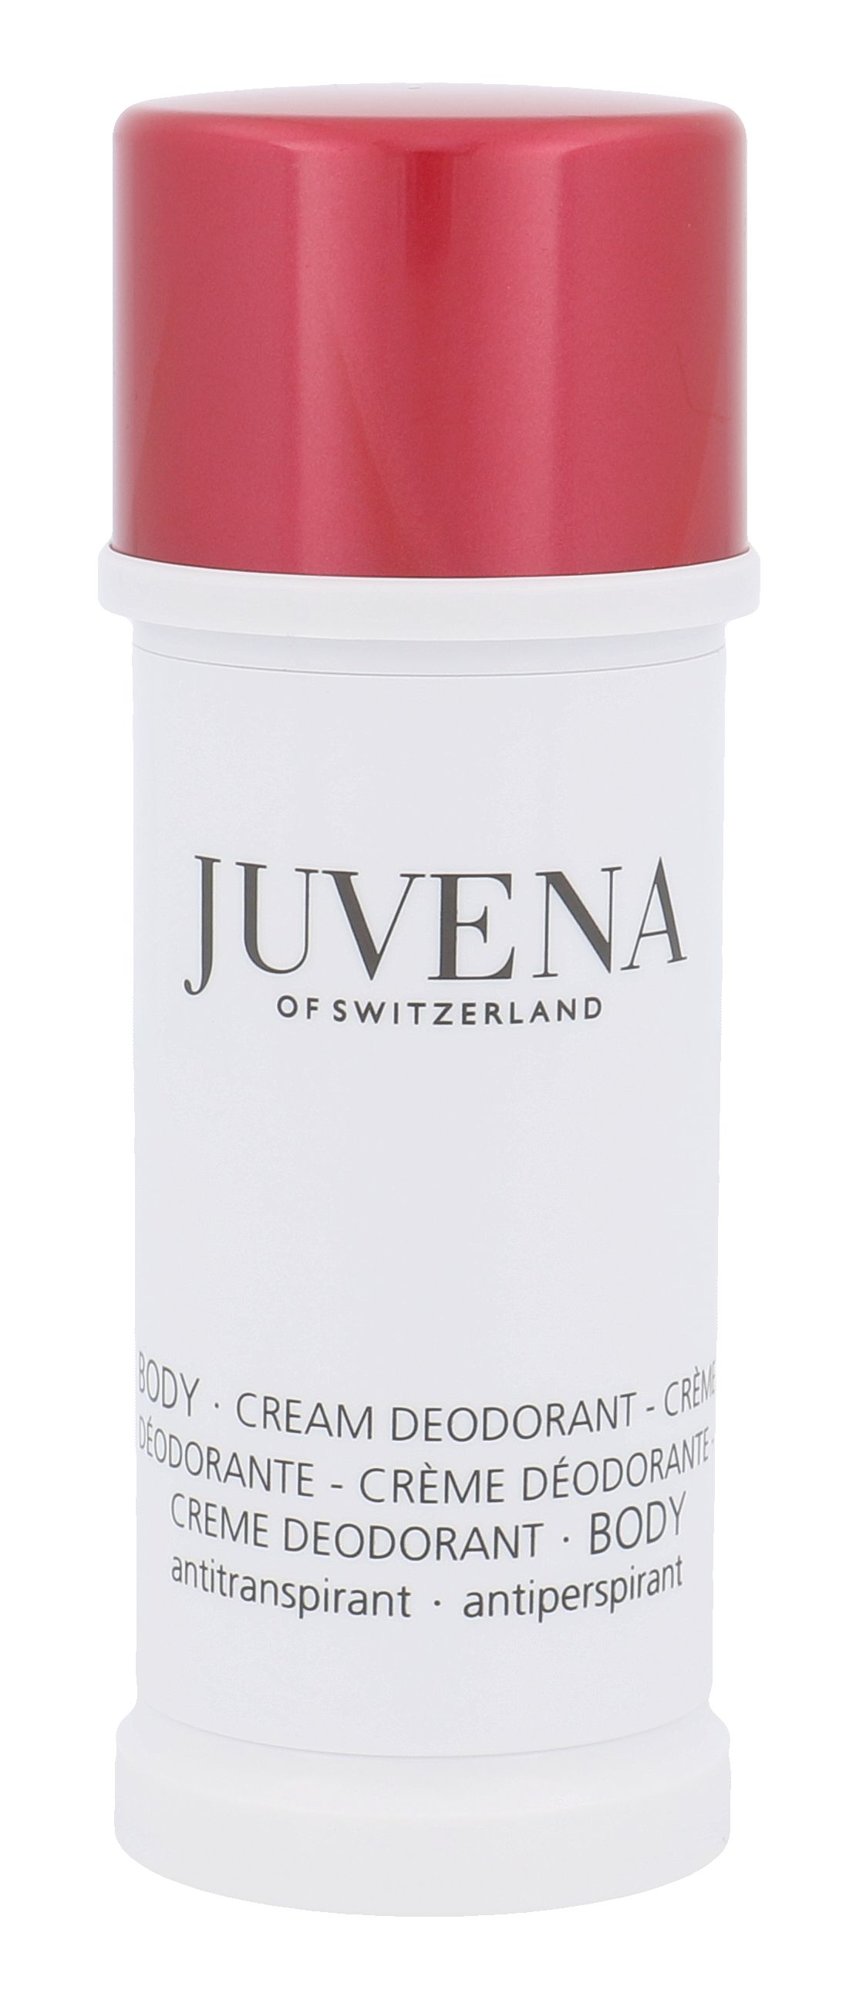 Juvena Body Cream Deodorant